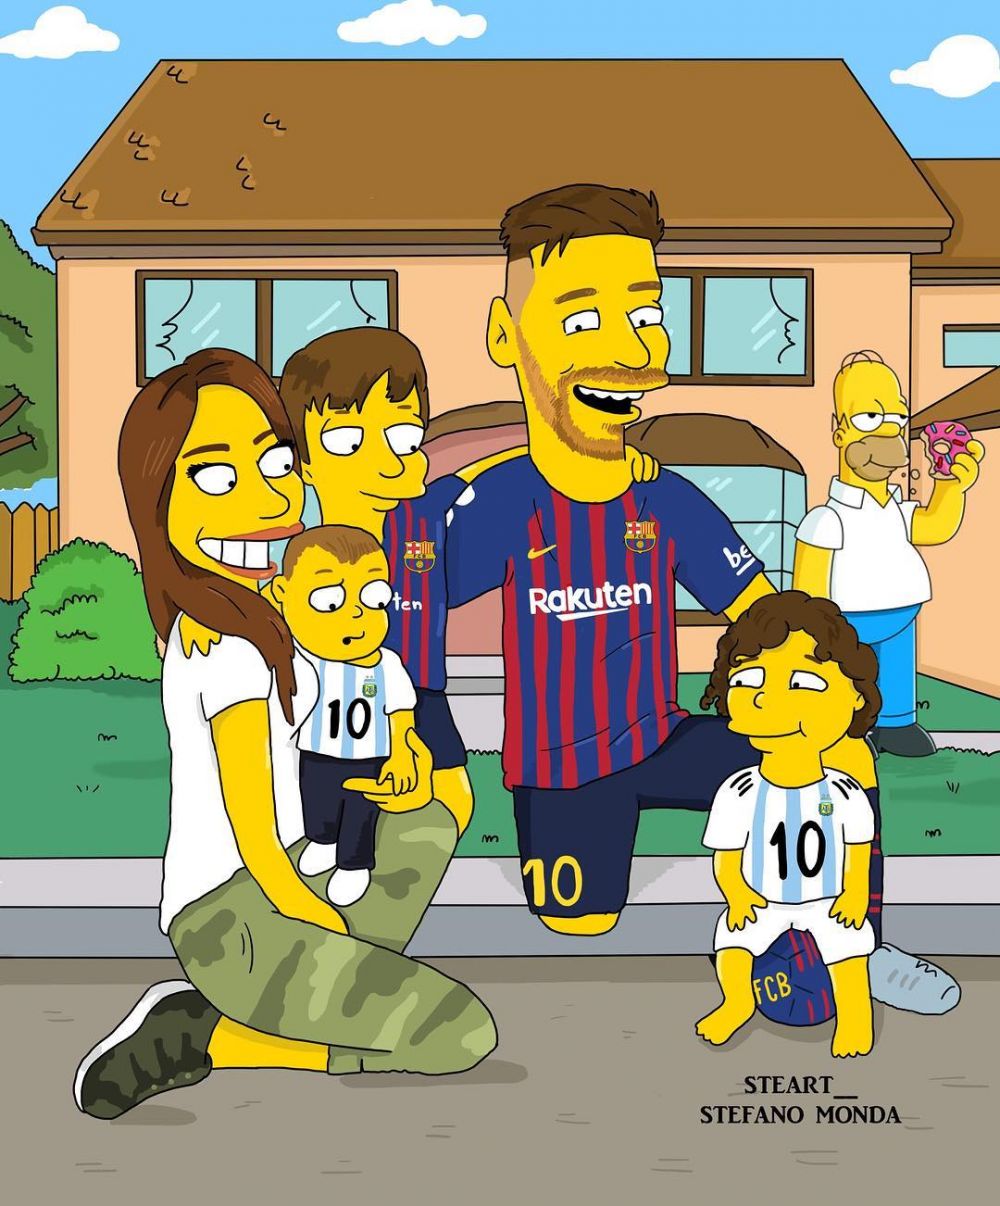 10 Seleb dunia diubah jadi karakter The Simpsons, hasilnya kece